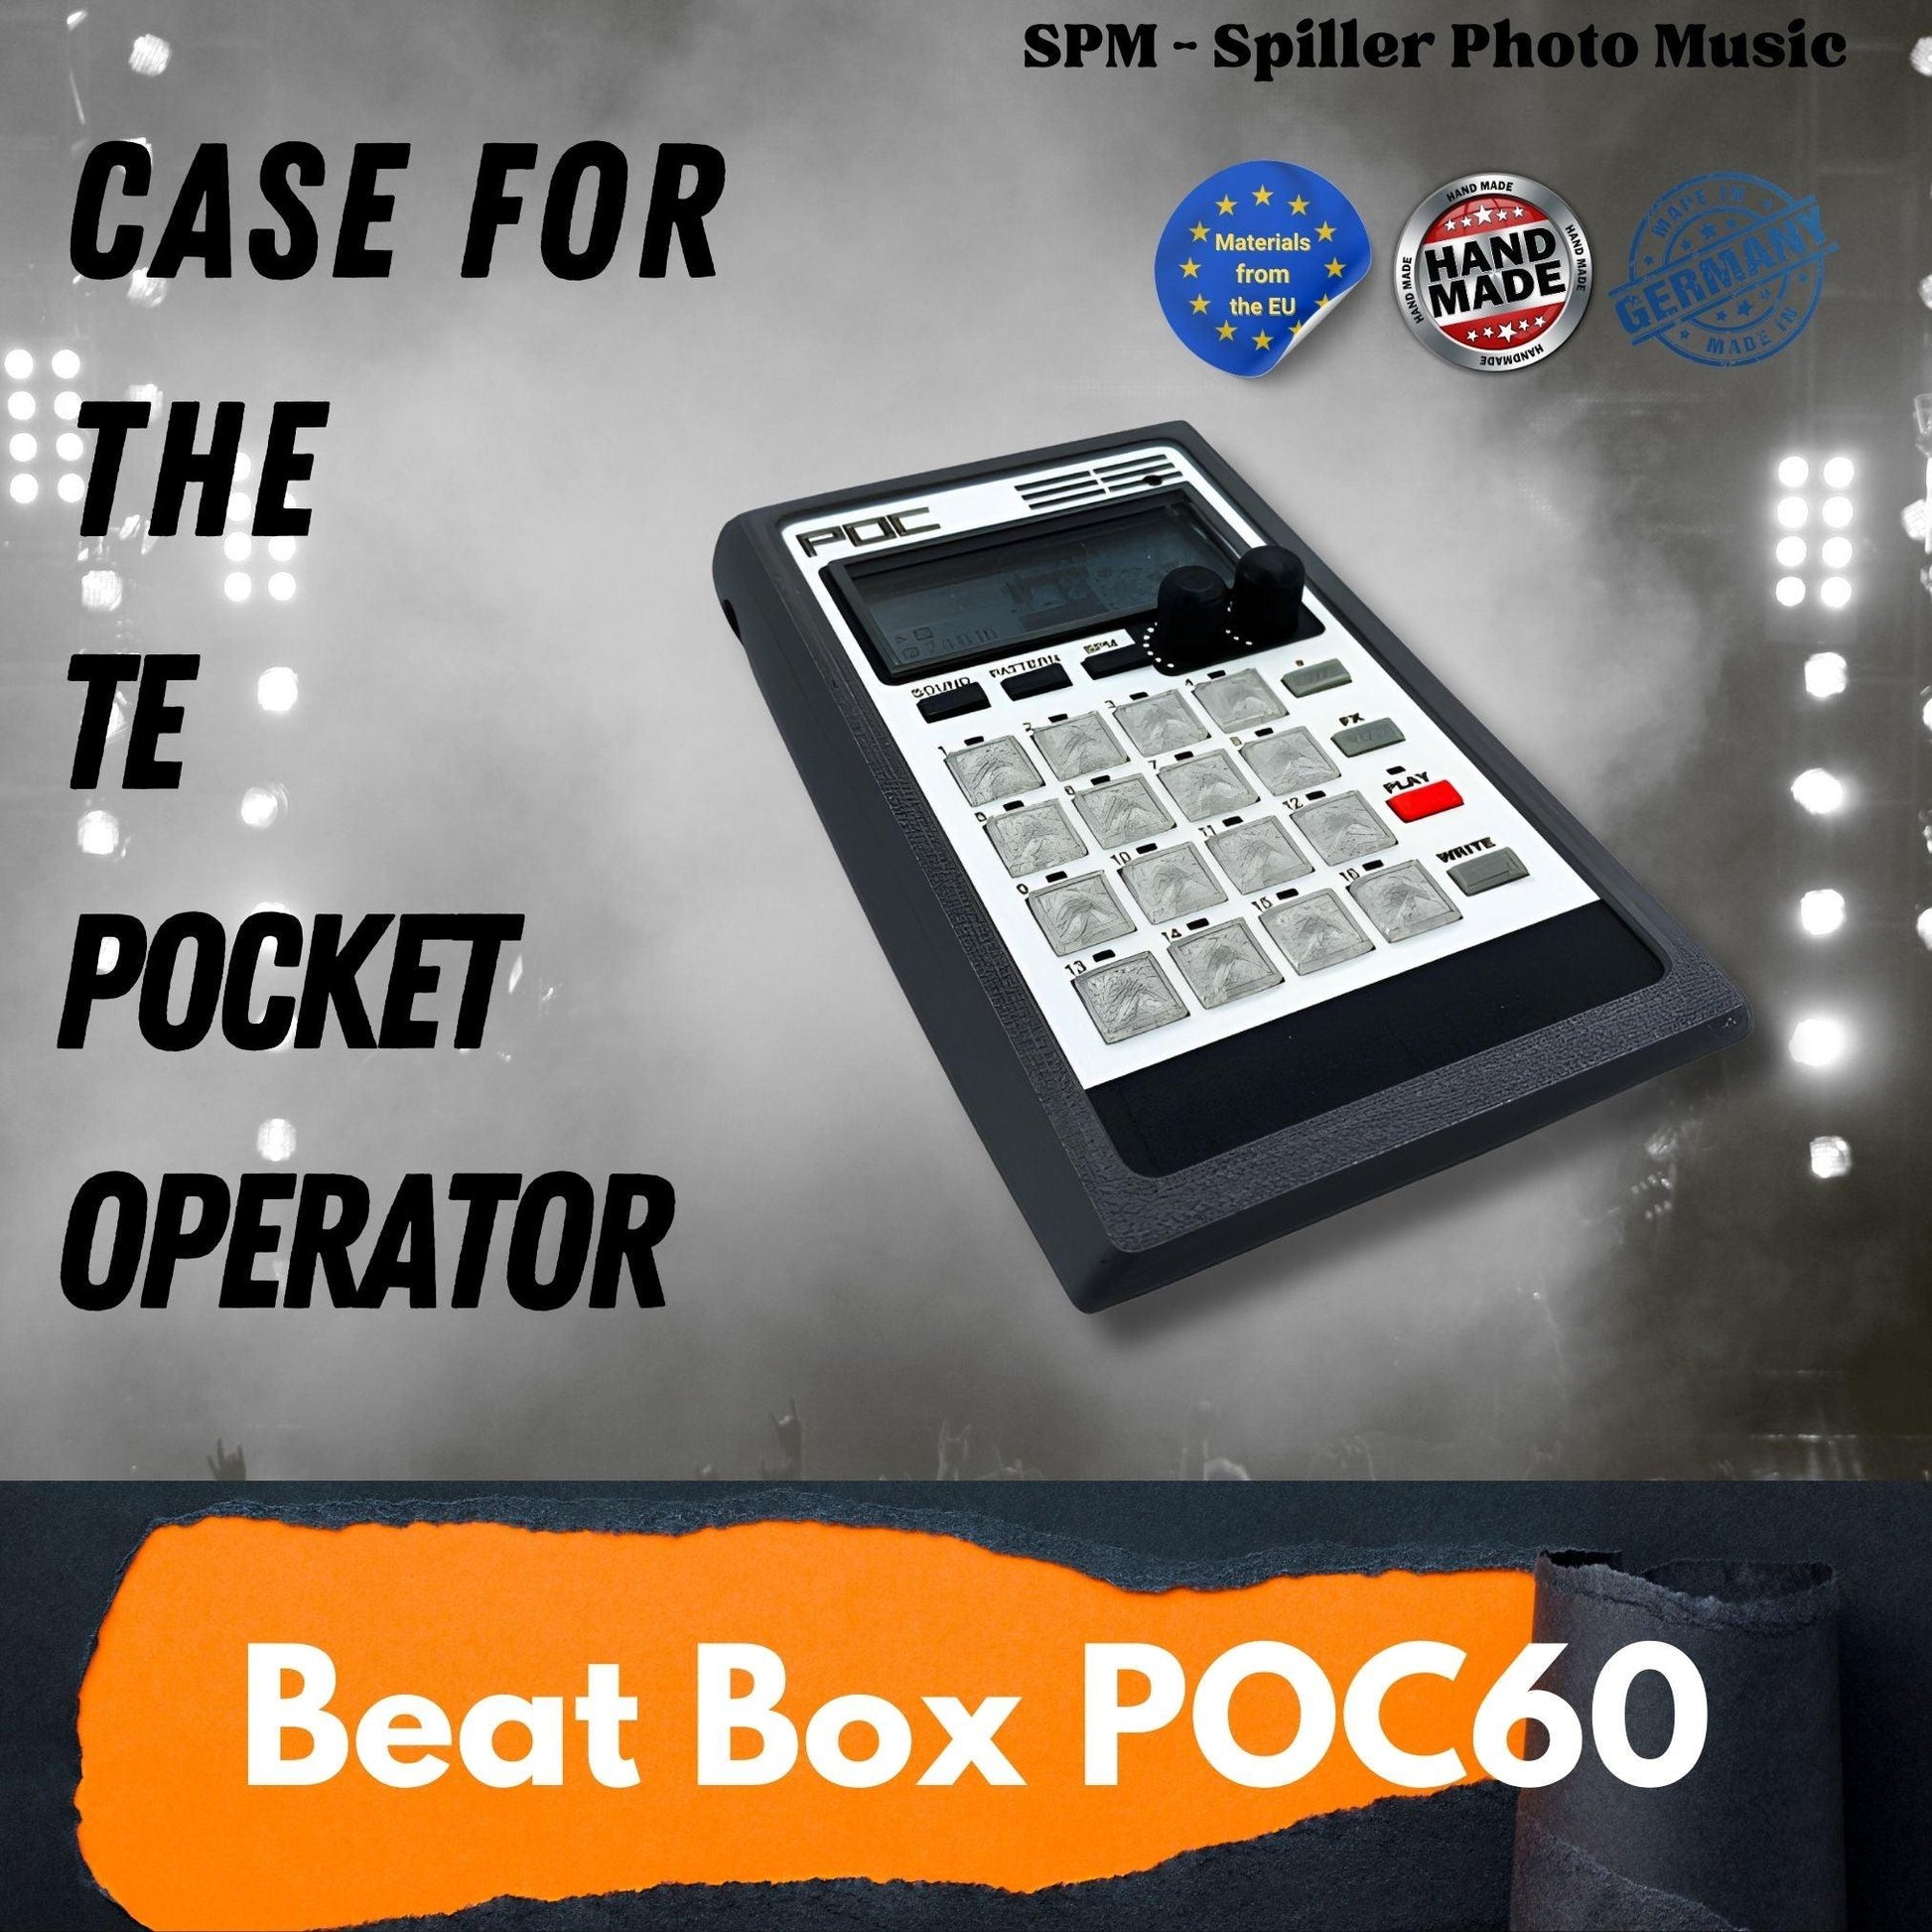 Beat Box POC - 3D gedrucktes Gehäuse für den Teenage Engineering Pocket Operator - SPM - Spillerphoto & Music